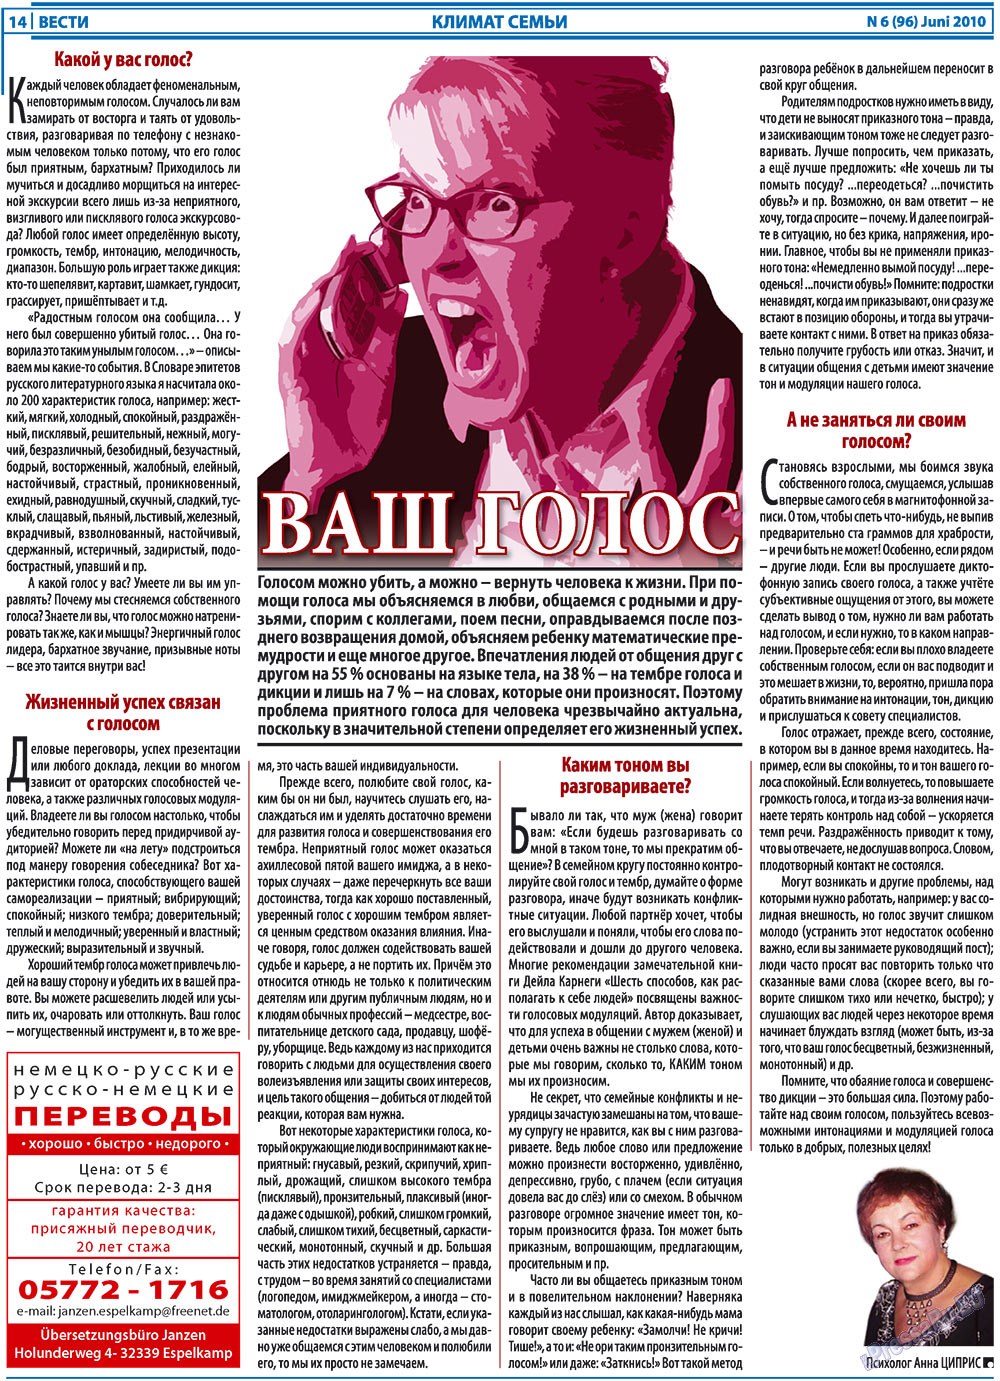 Вести, газета. 2010 №6 стр.14